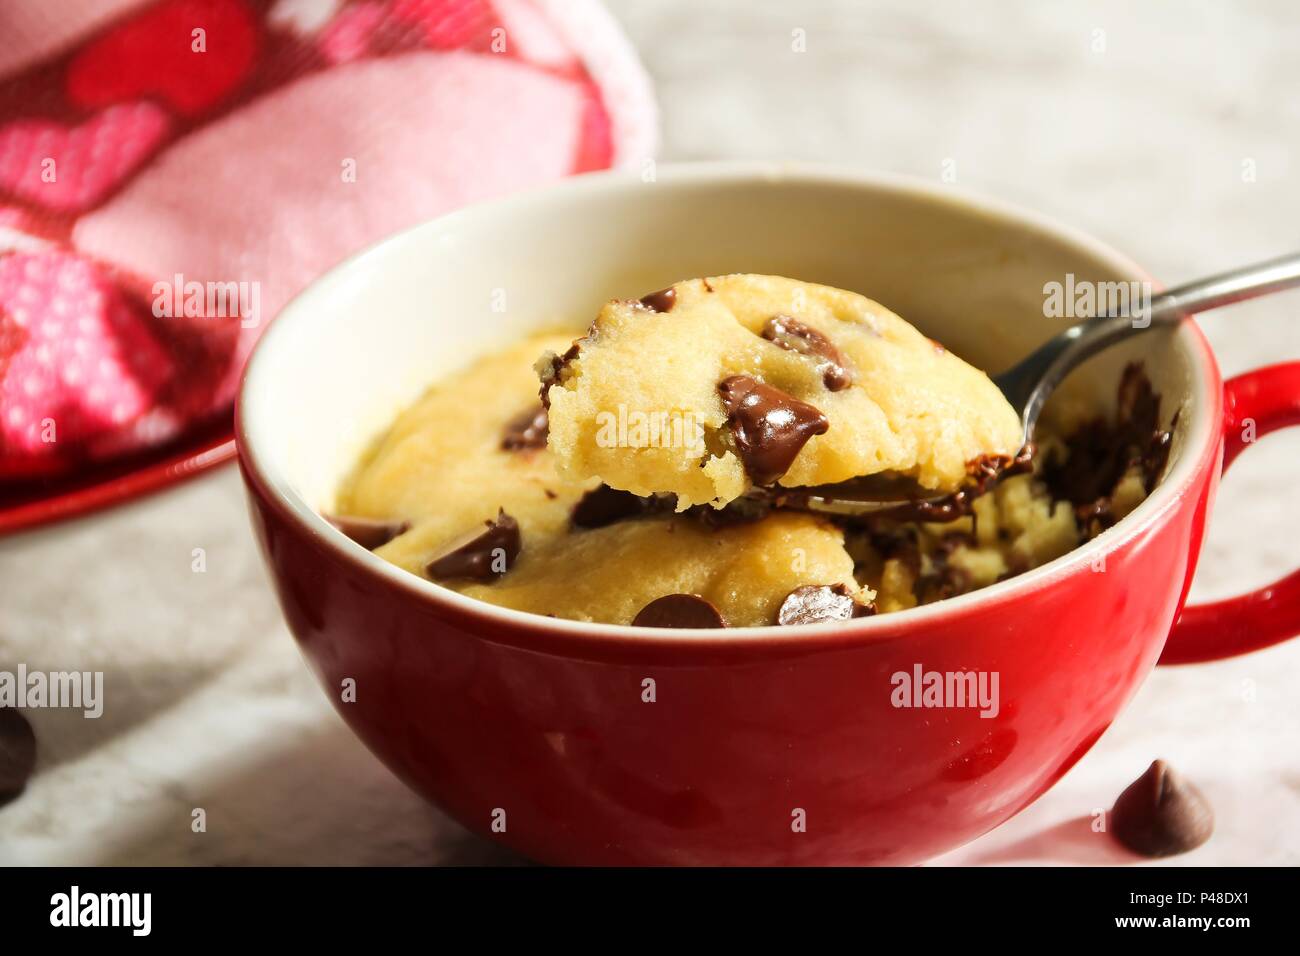 Micro-ondes maison biscuit aux brisures de chocolat dans une tasse, selective focus / Valentines Day dessert, Close up Banque D'Images